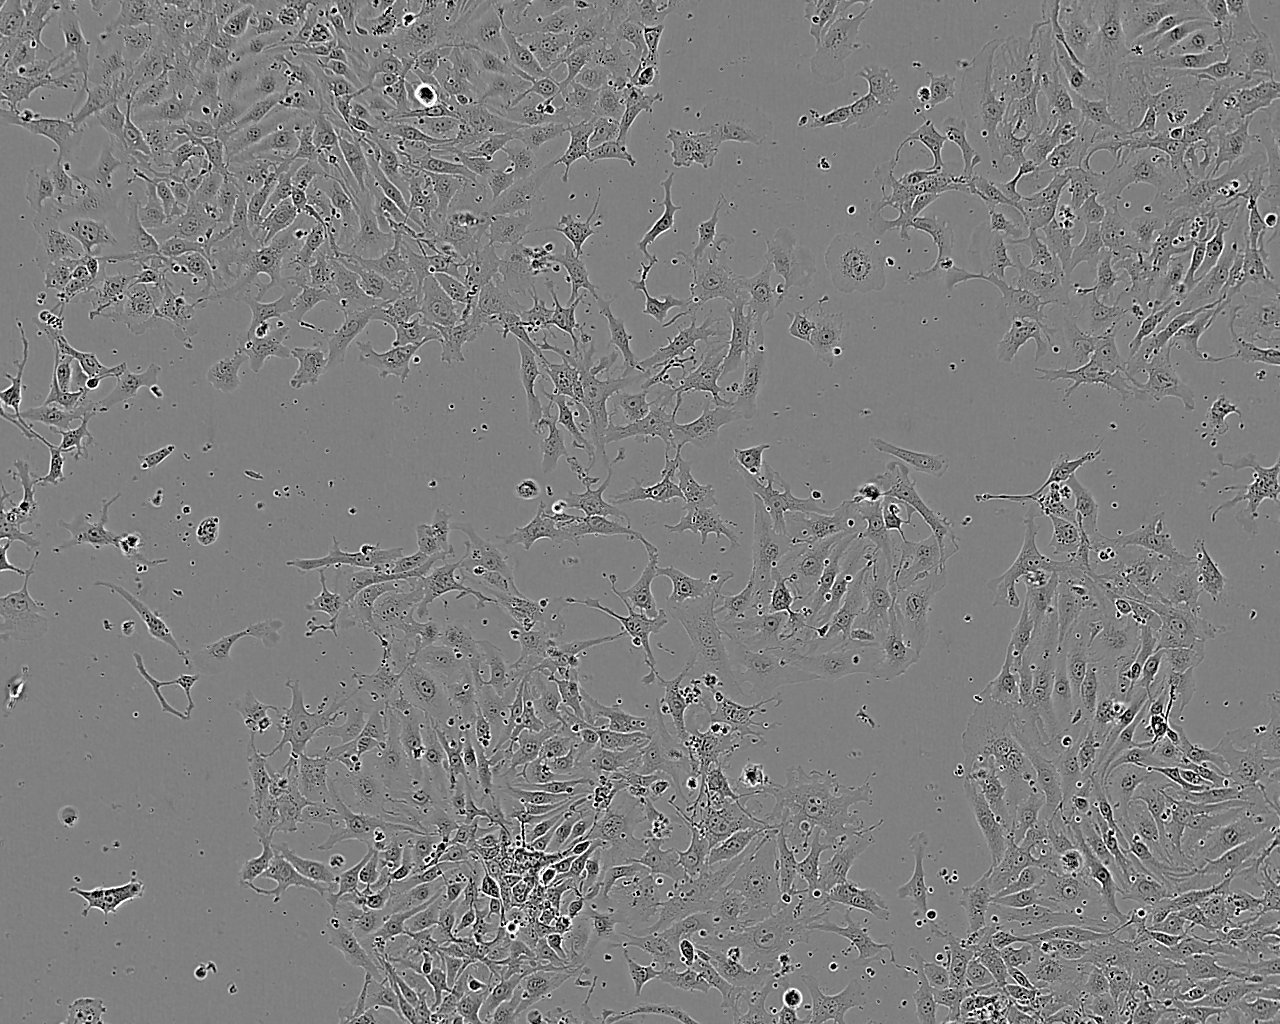 LMH epithelioid cells鸡肝癌细胞系,LMH epithelioid cells